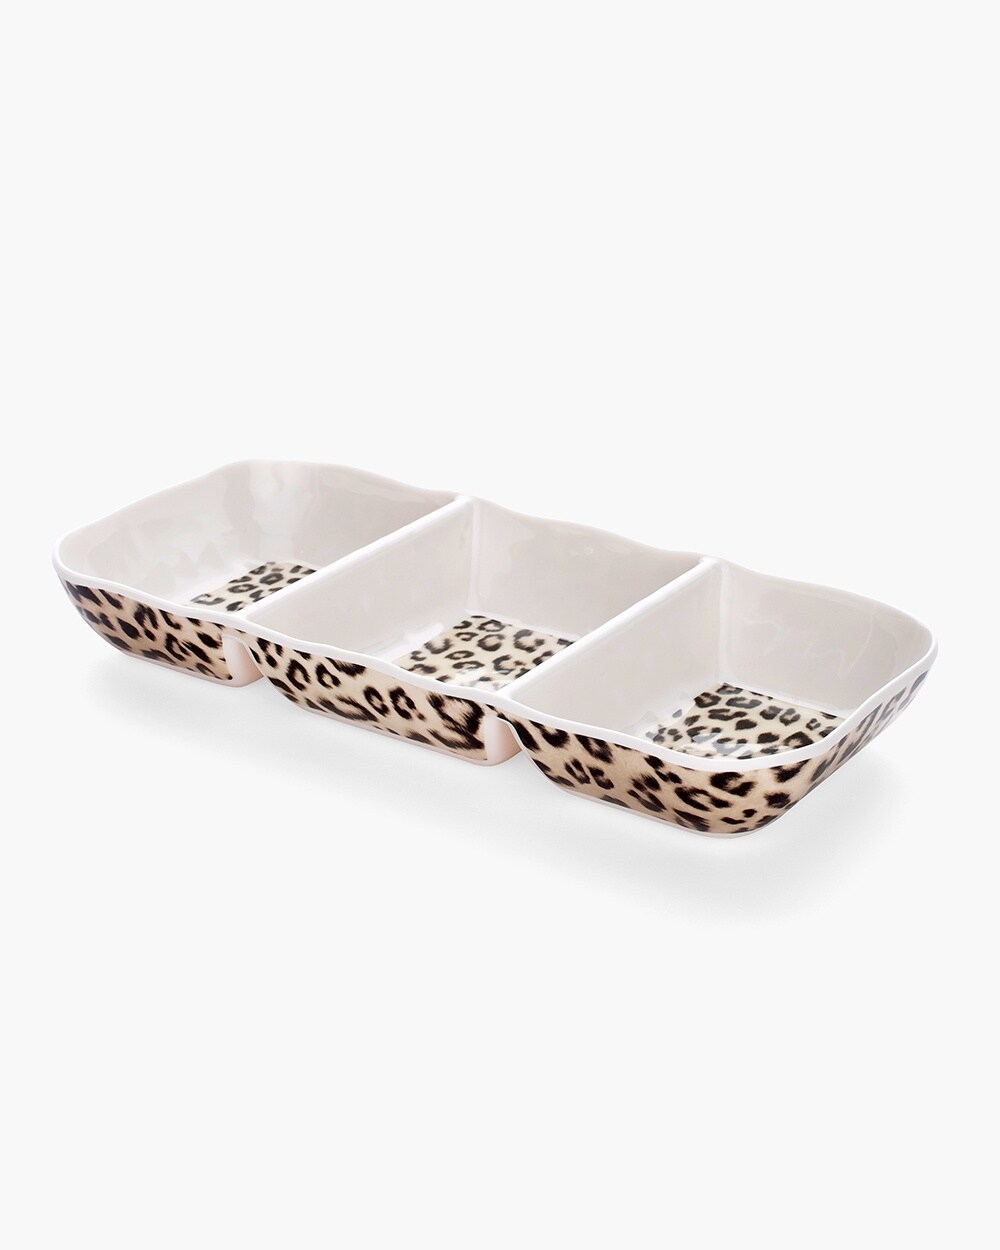 Leopard-Print Dip Dish